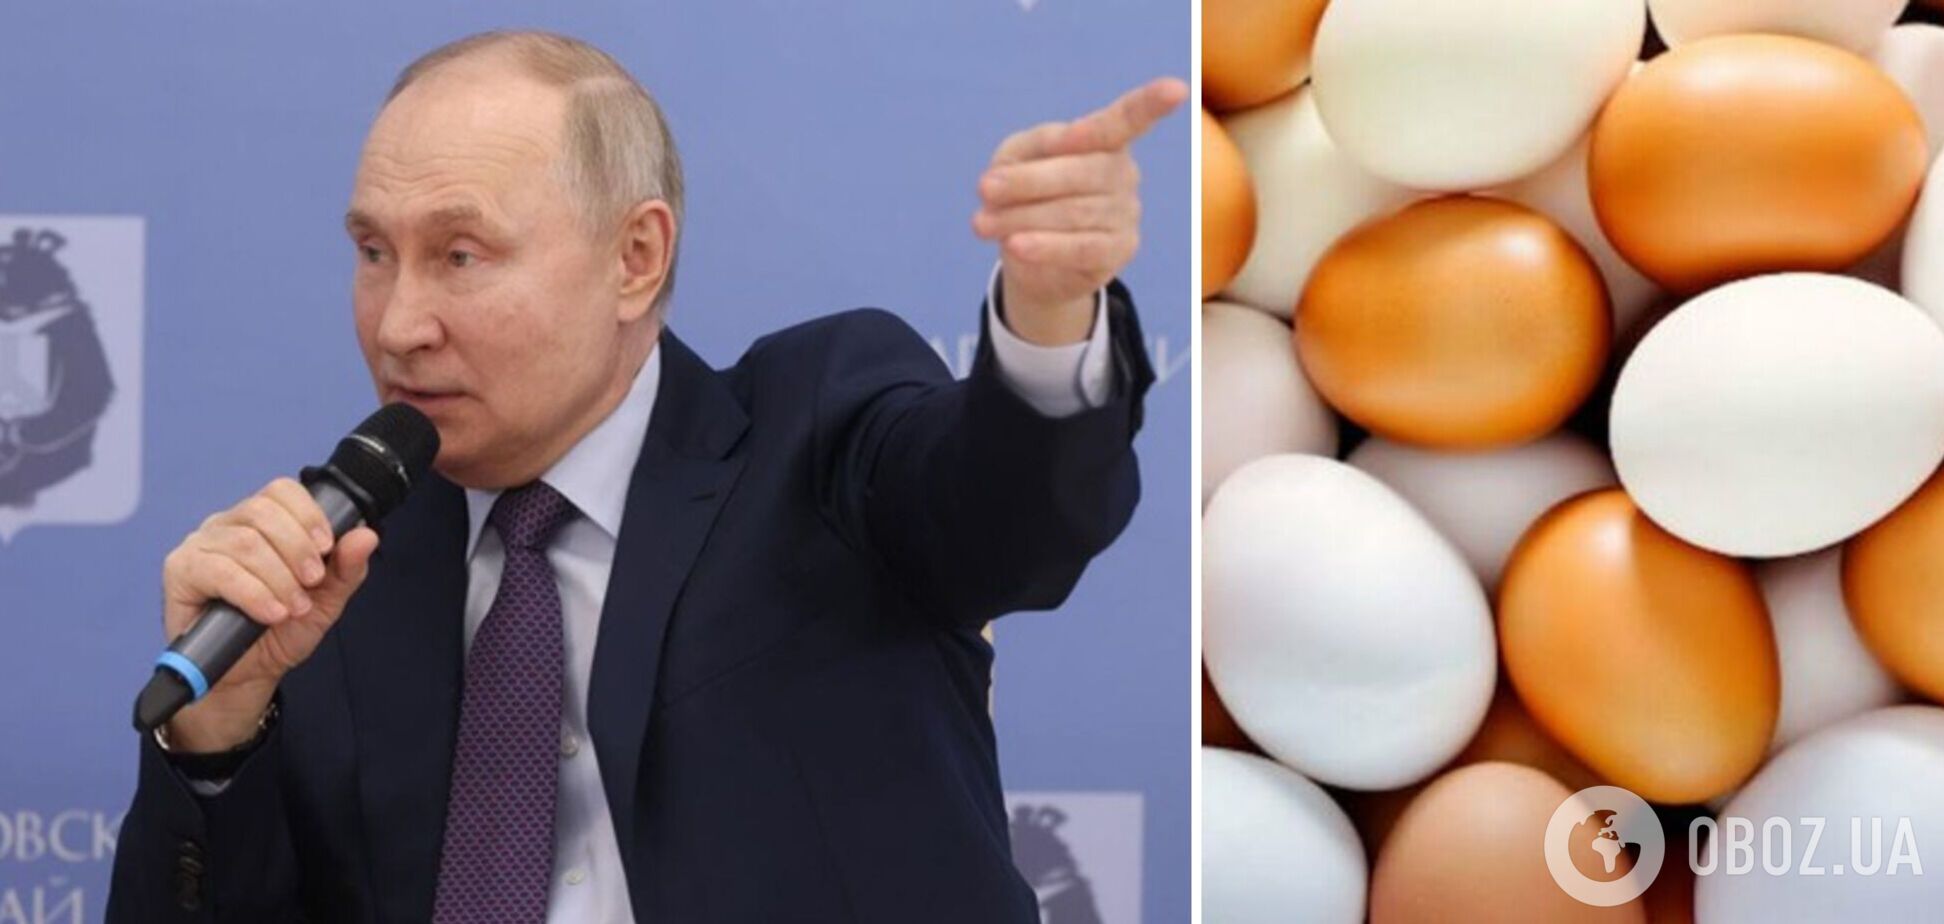 Путин объяснил удорожание яиц в РФ